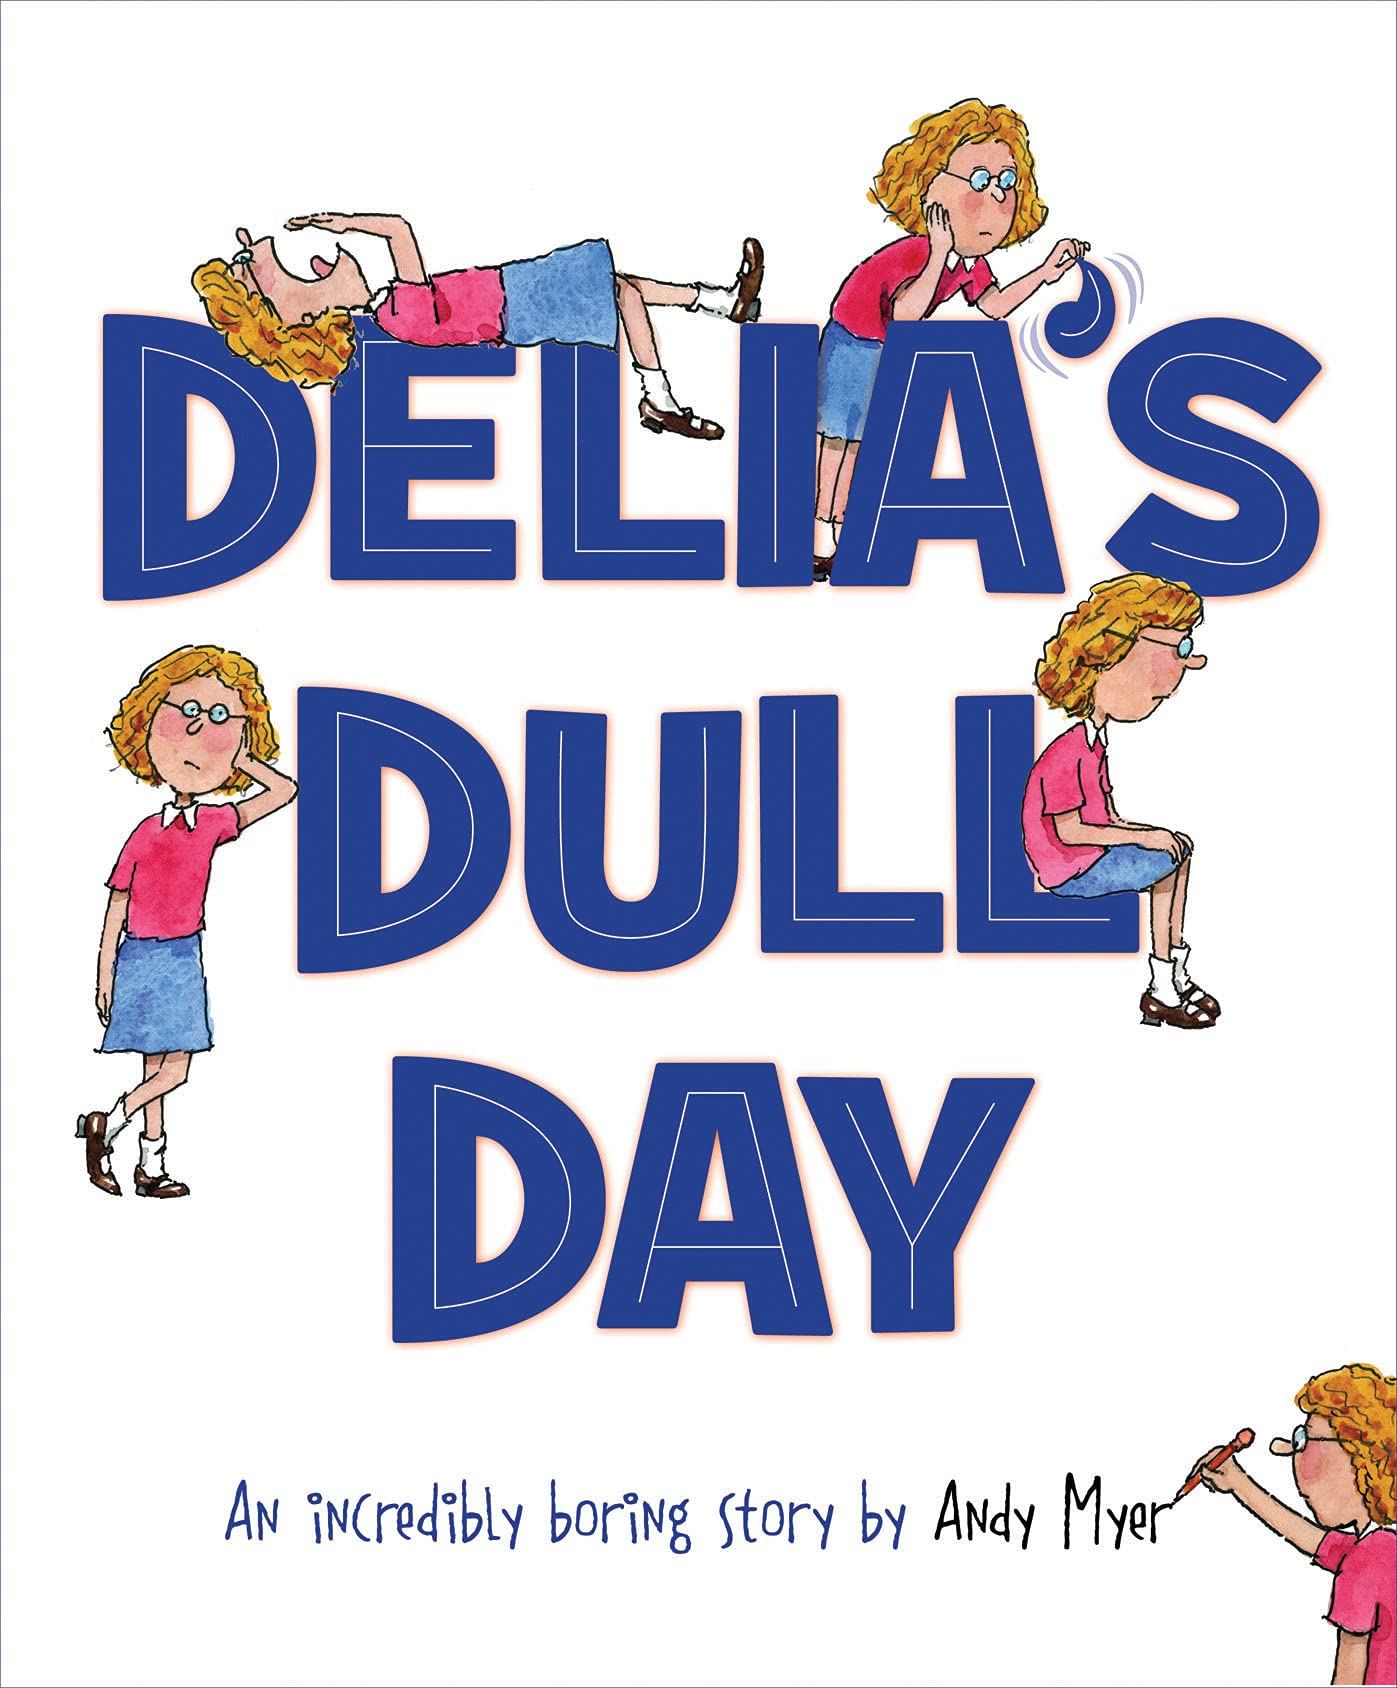 Delia's Dull Day